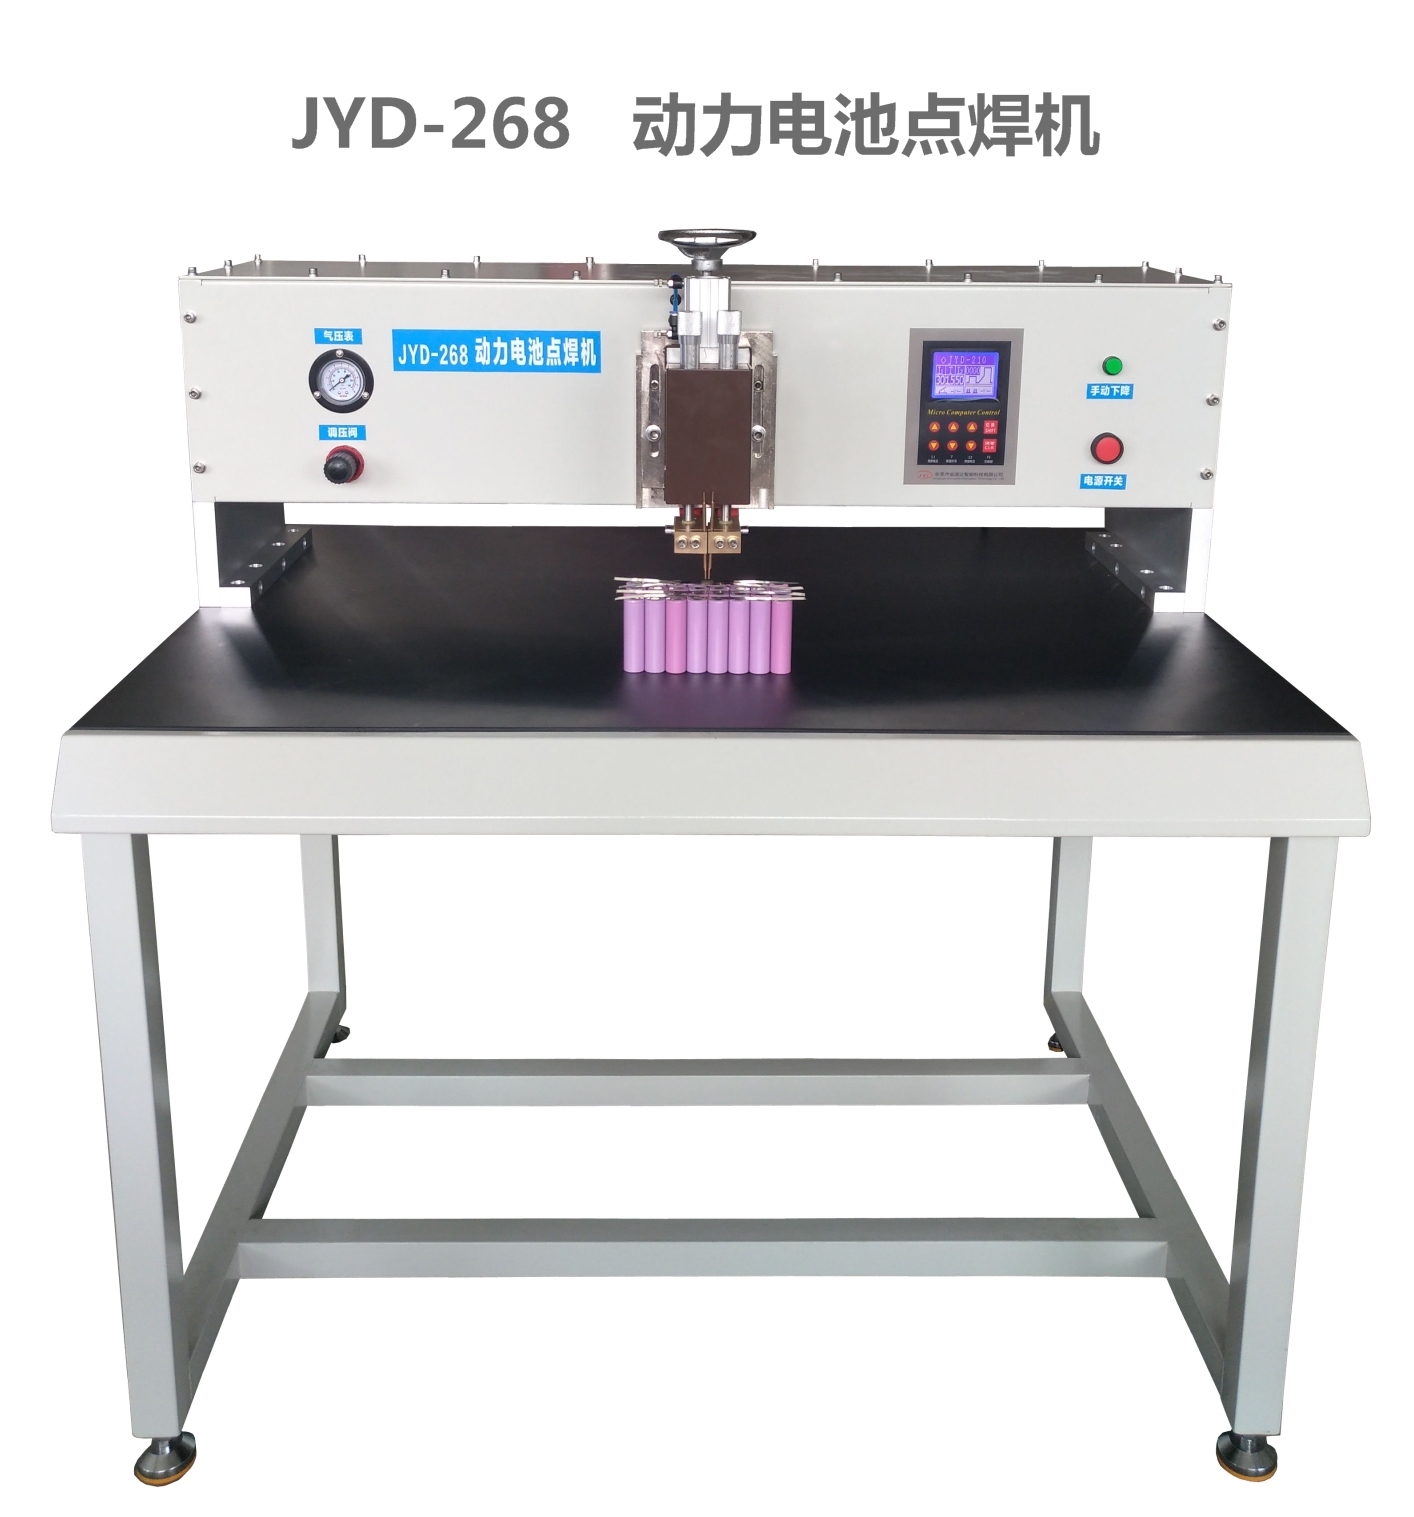 厂家直销 JYD-268  动力电池点焊机图片